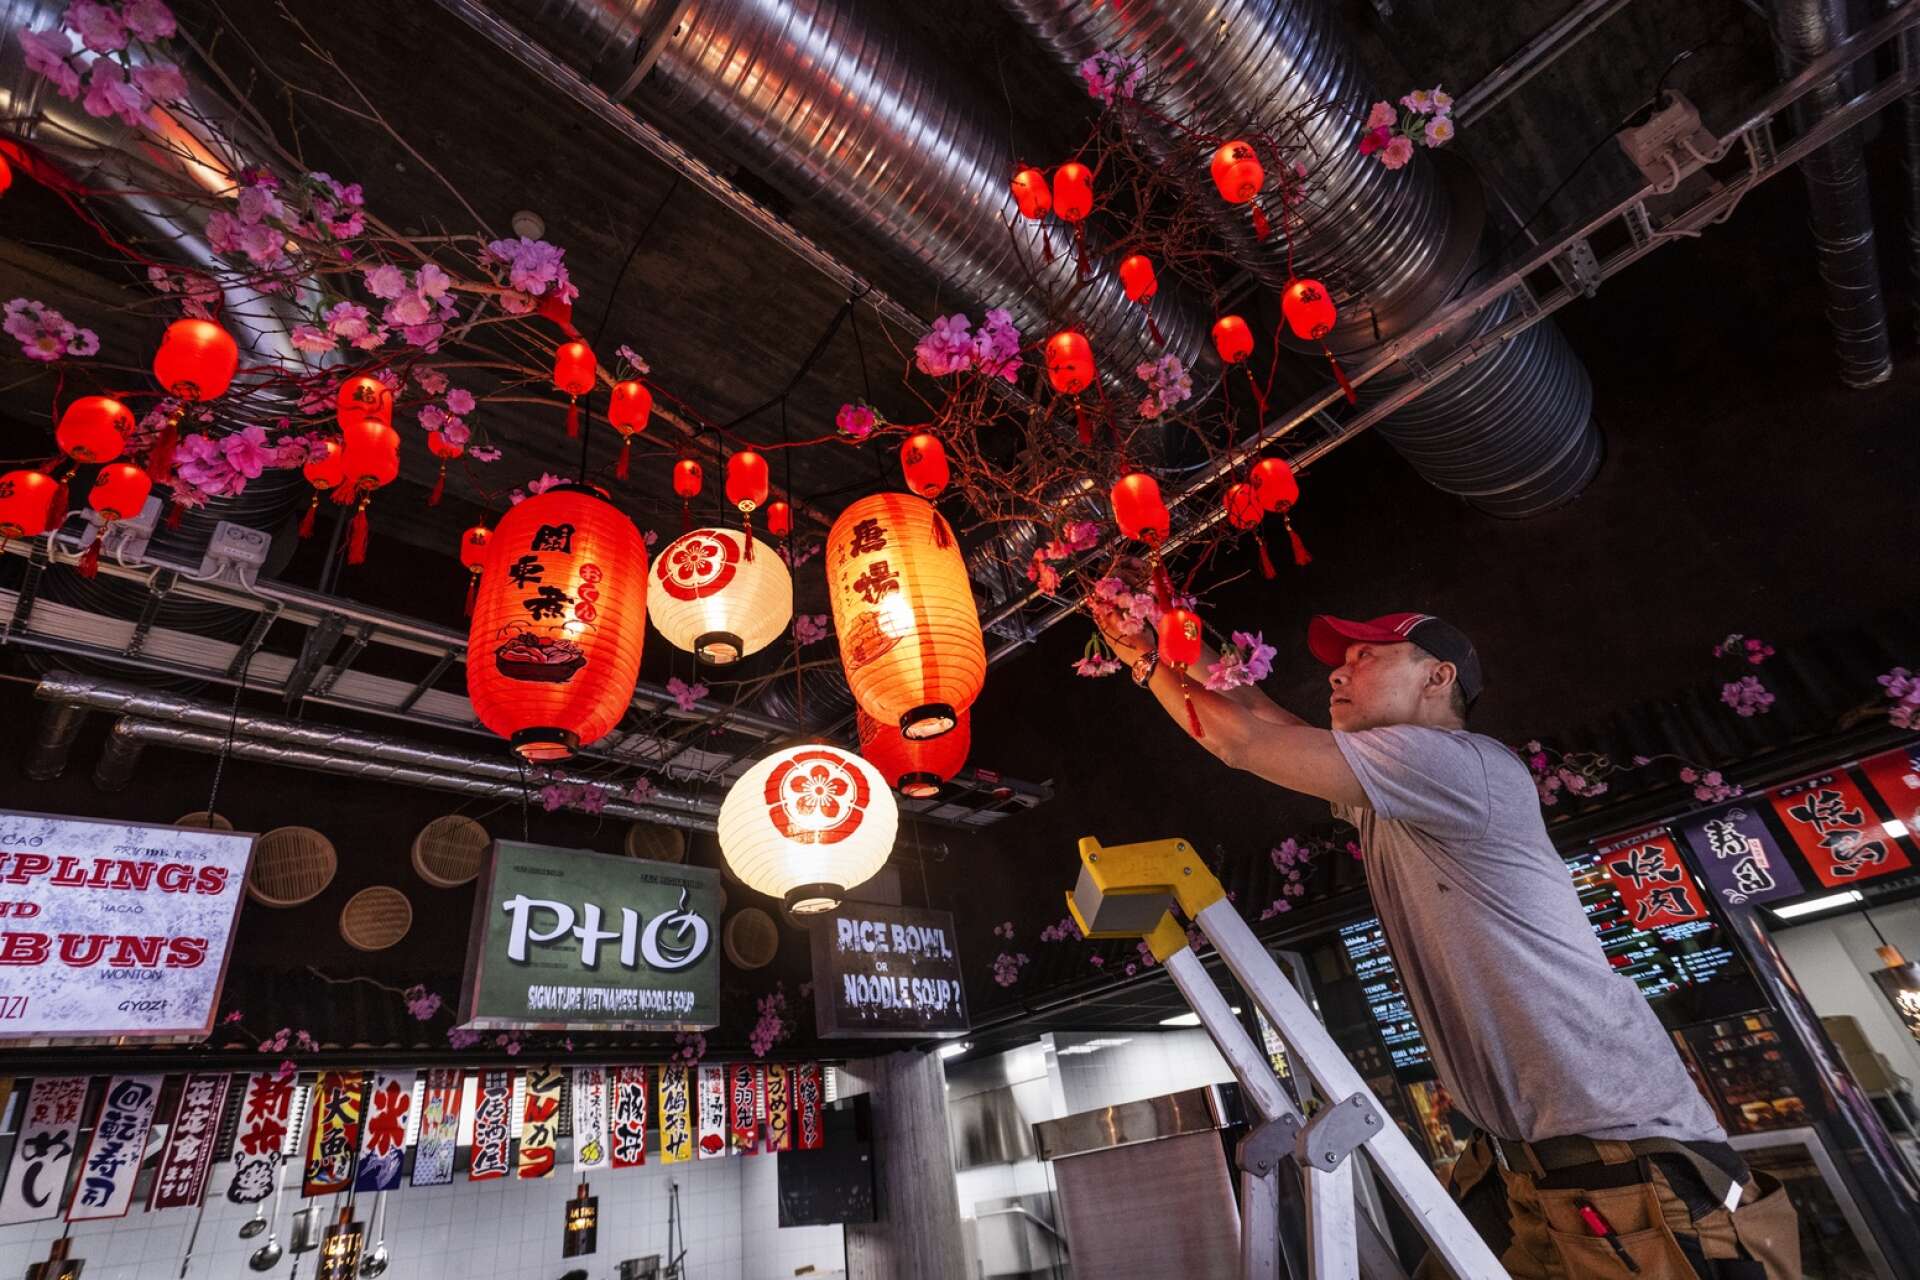 Inspirationen till de små röda lanternorna fick han på ett café i Saigon.